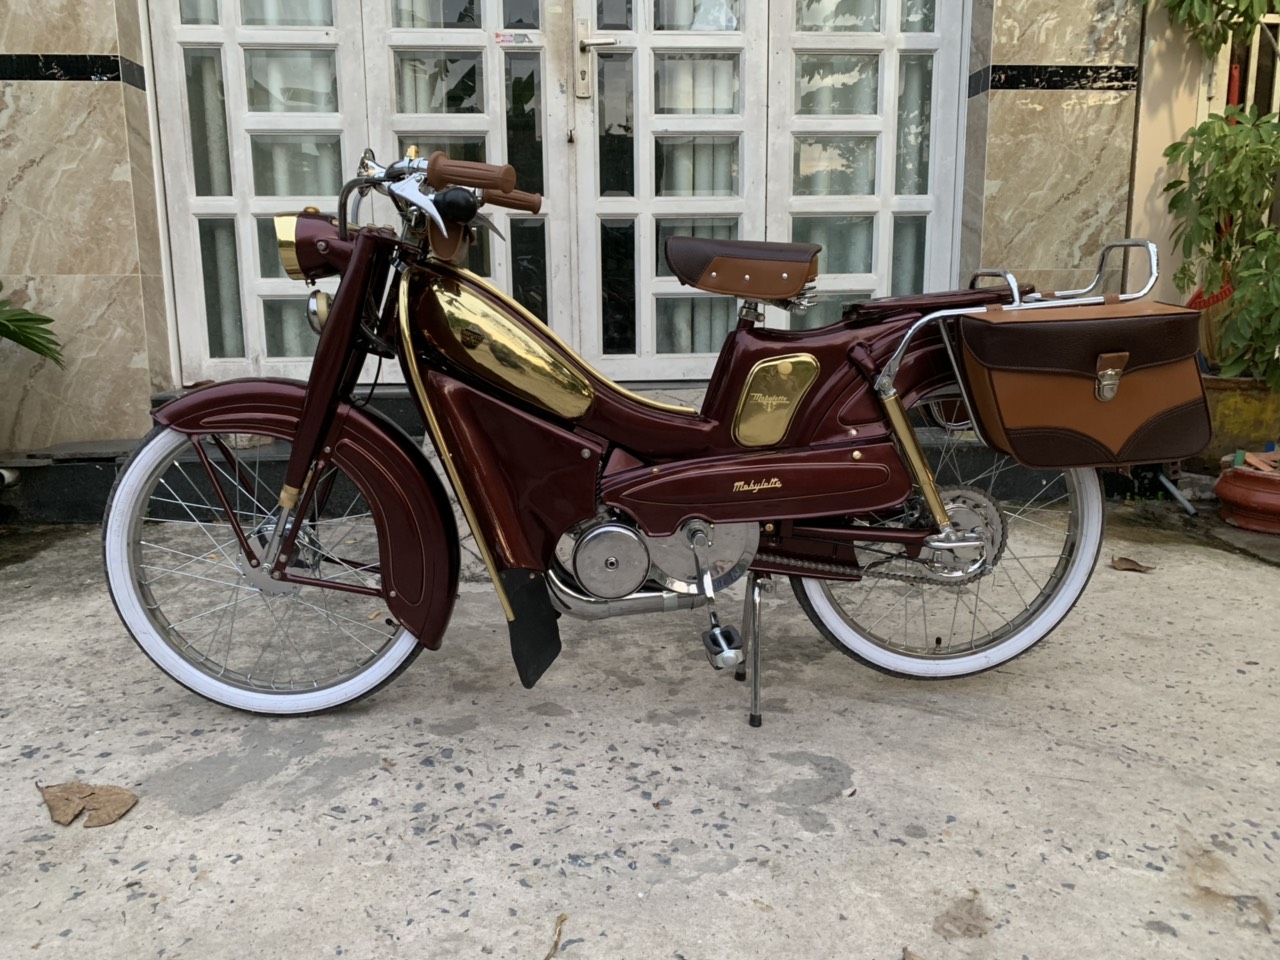 Thú chơi xe máy cổ Mobylette của người dân ở TP Hồ Chí Minh  Phong cách   Vietnam VietnamPlus